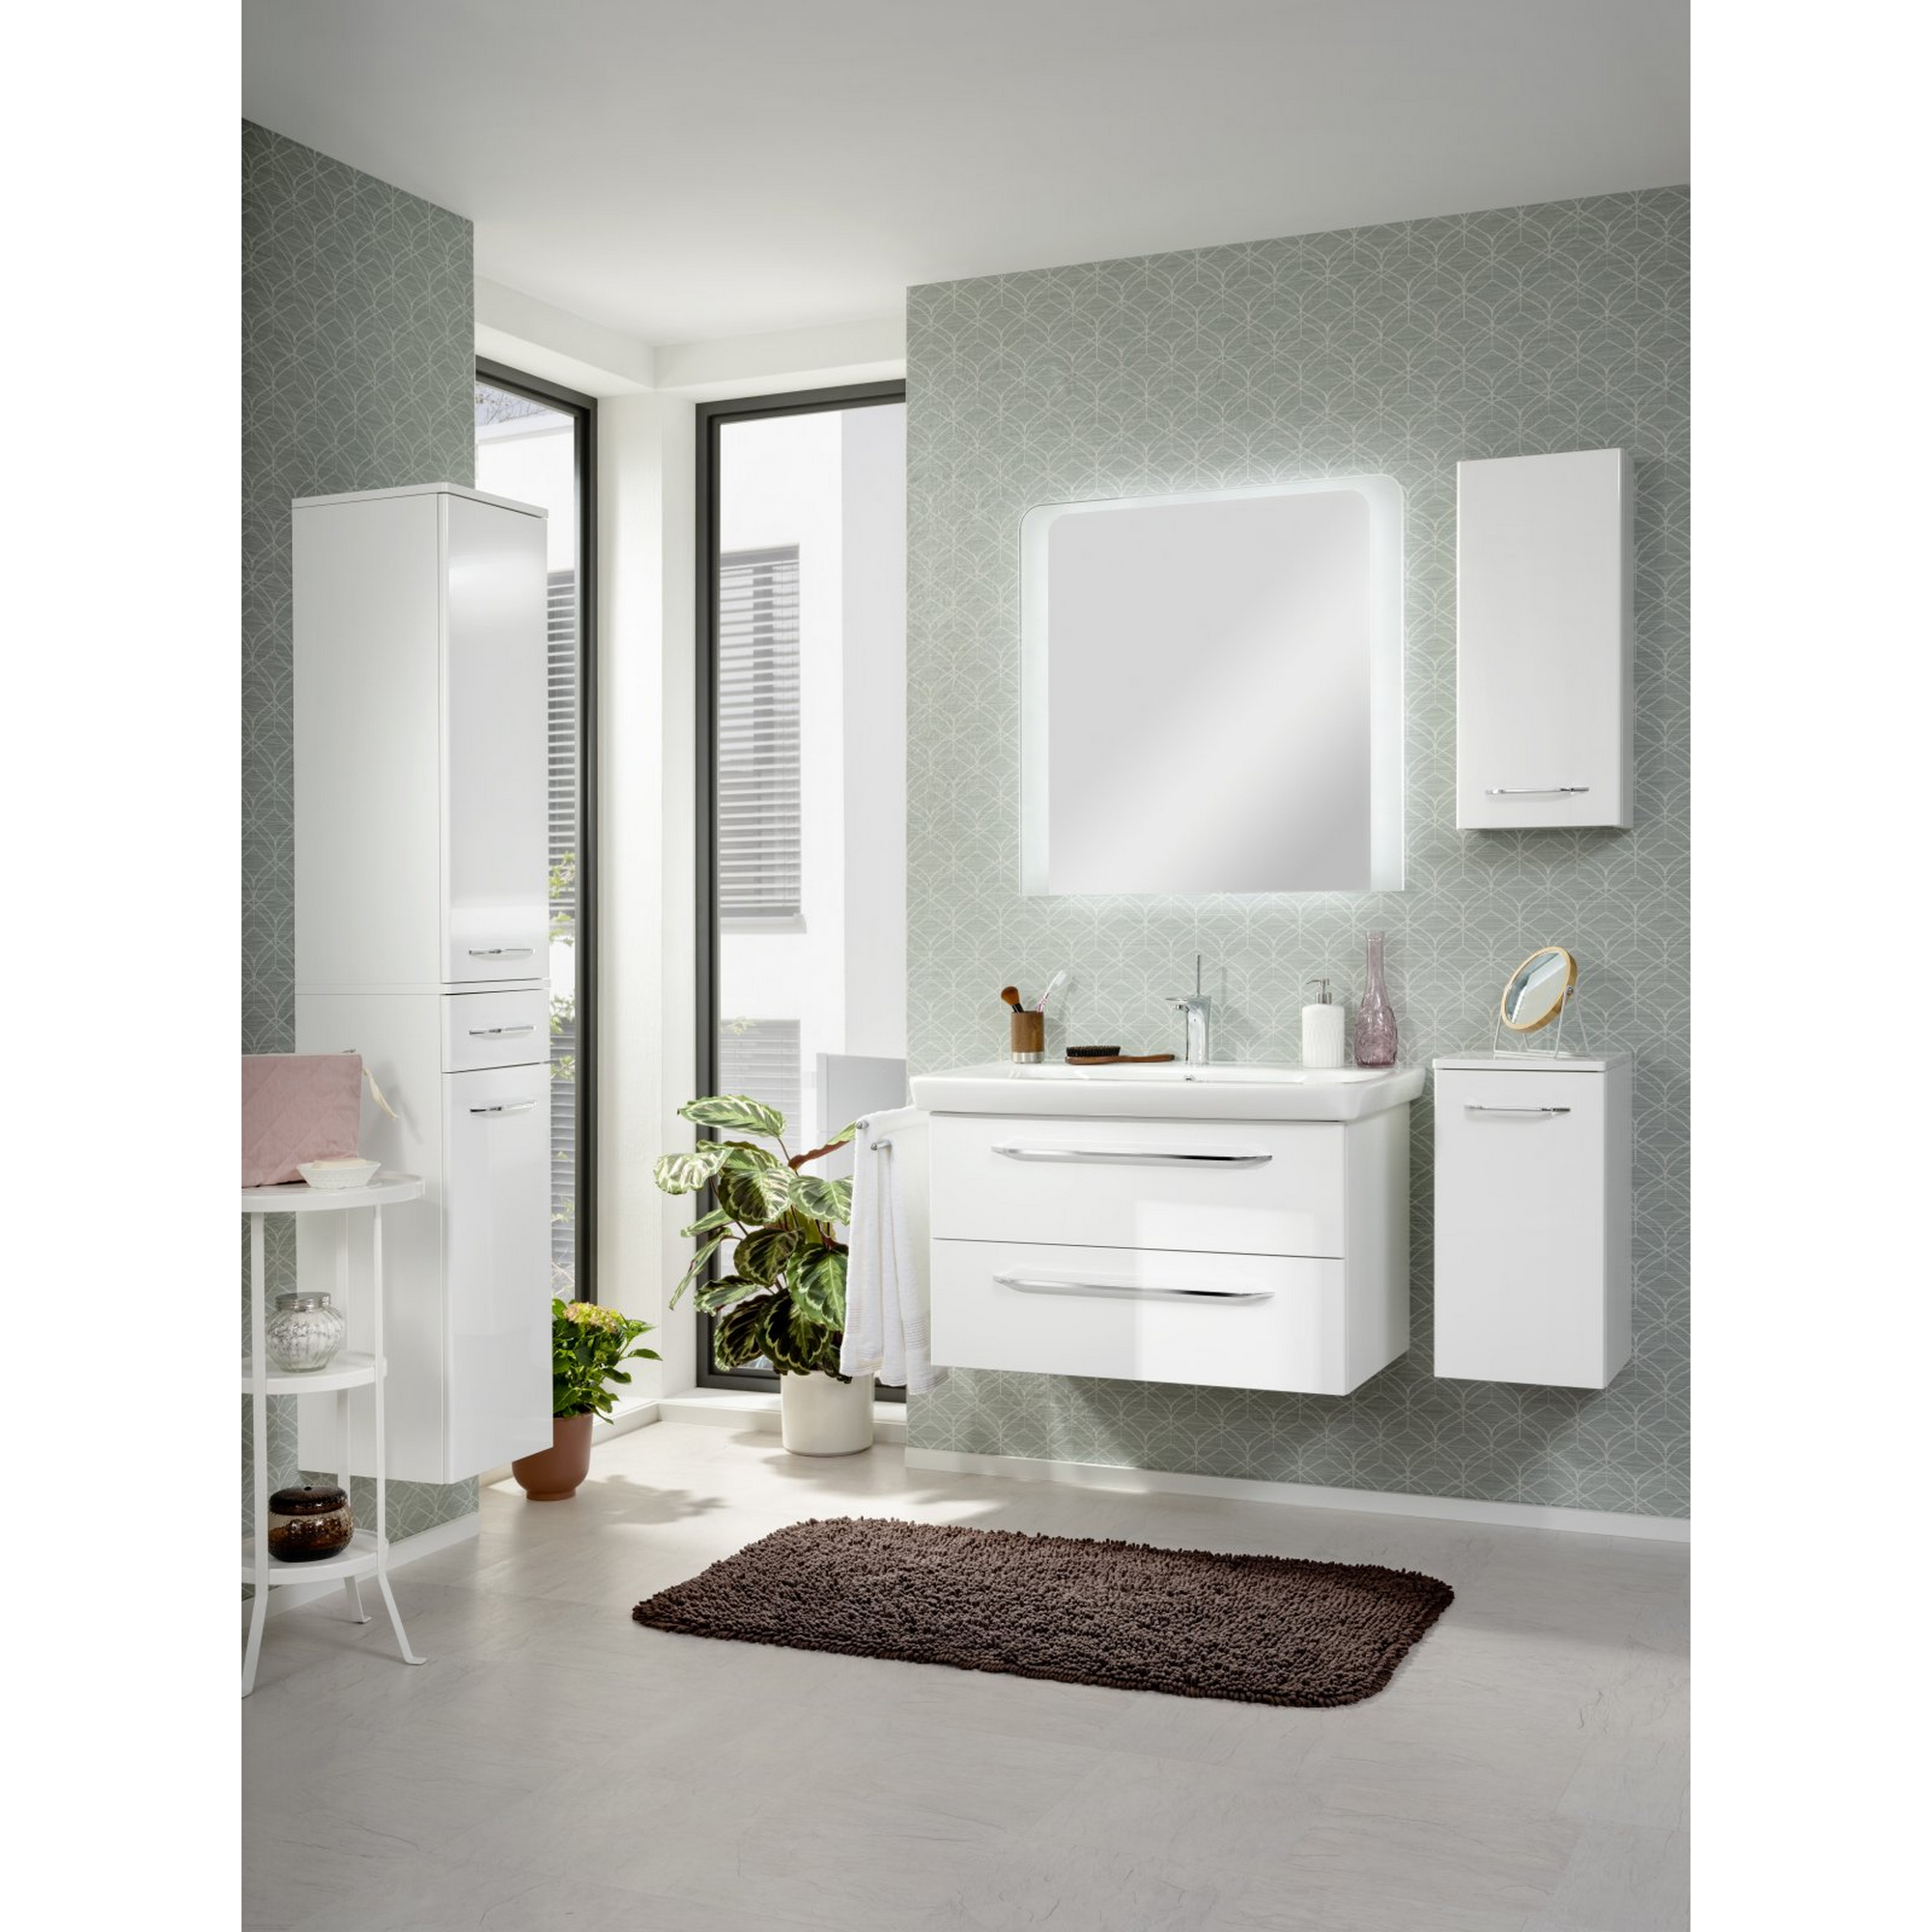 Waschtisch-Unterschrank 'Milano' weiß/Asteiche 80 x 49,5 x 48 cm + product picture